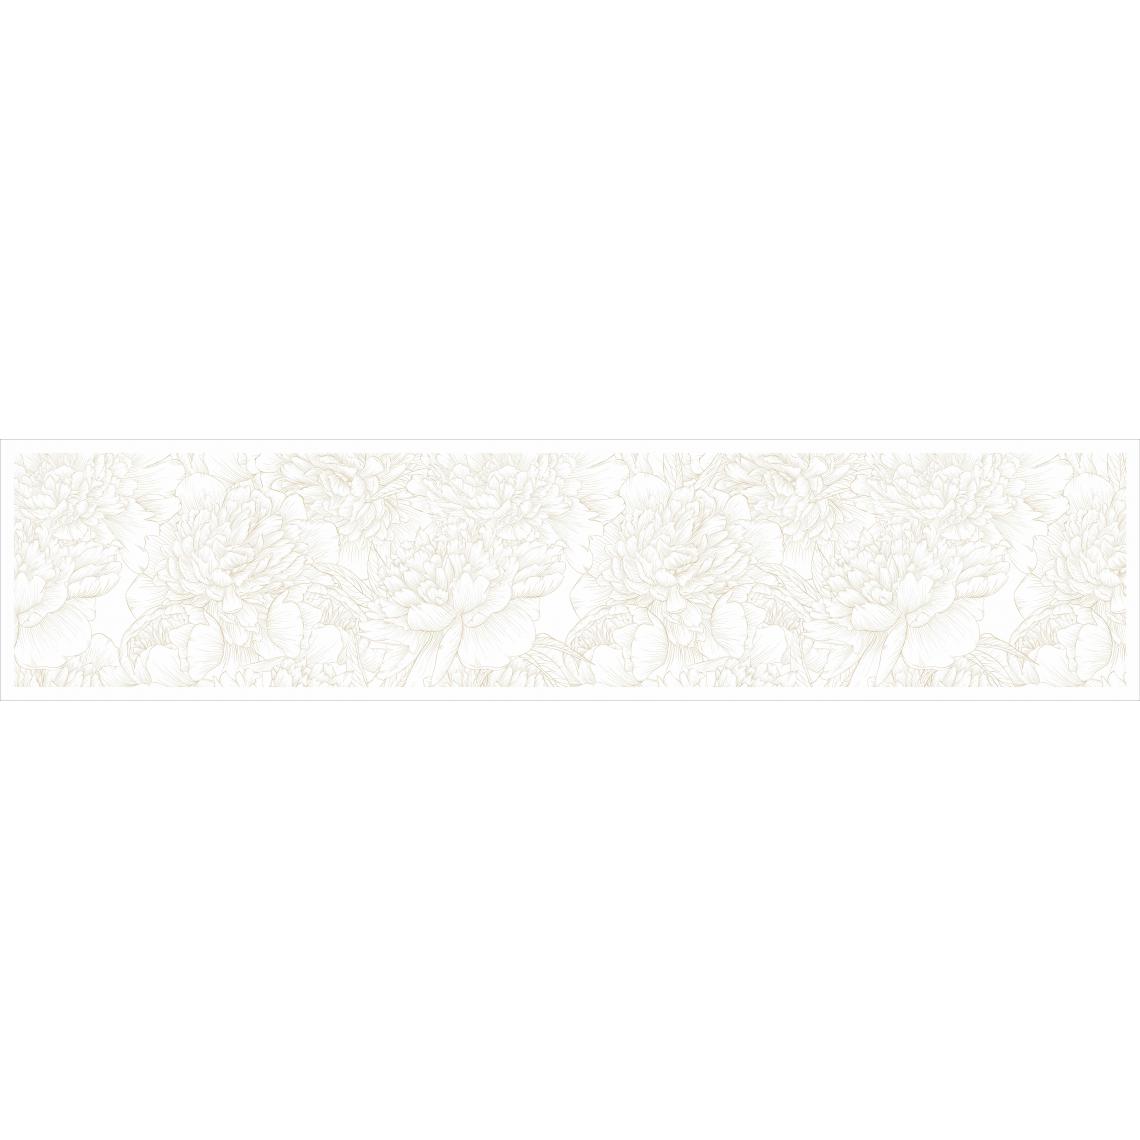 Alter - Chemin de cuisine, 100% Made in Italy, Tapis antitache avec impression numérique, Chemin de table antidérapant et lavable, Modèle Fleurs - Beverley, cm 240x52 - Tapis